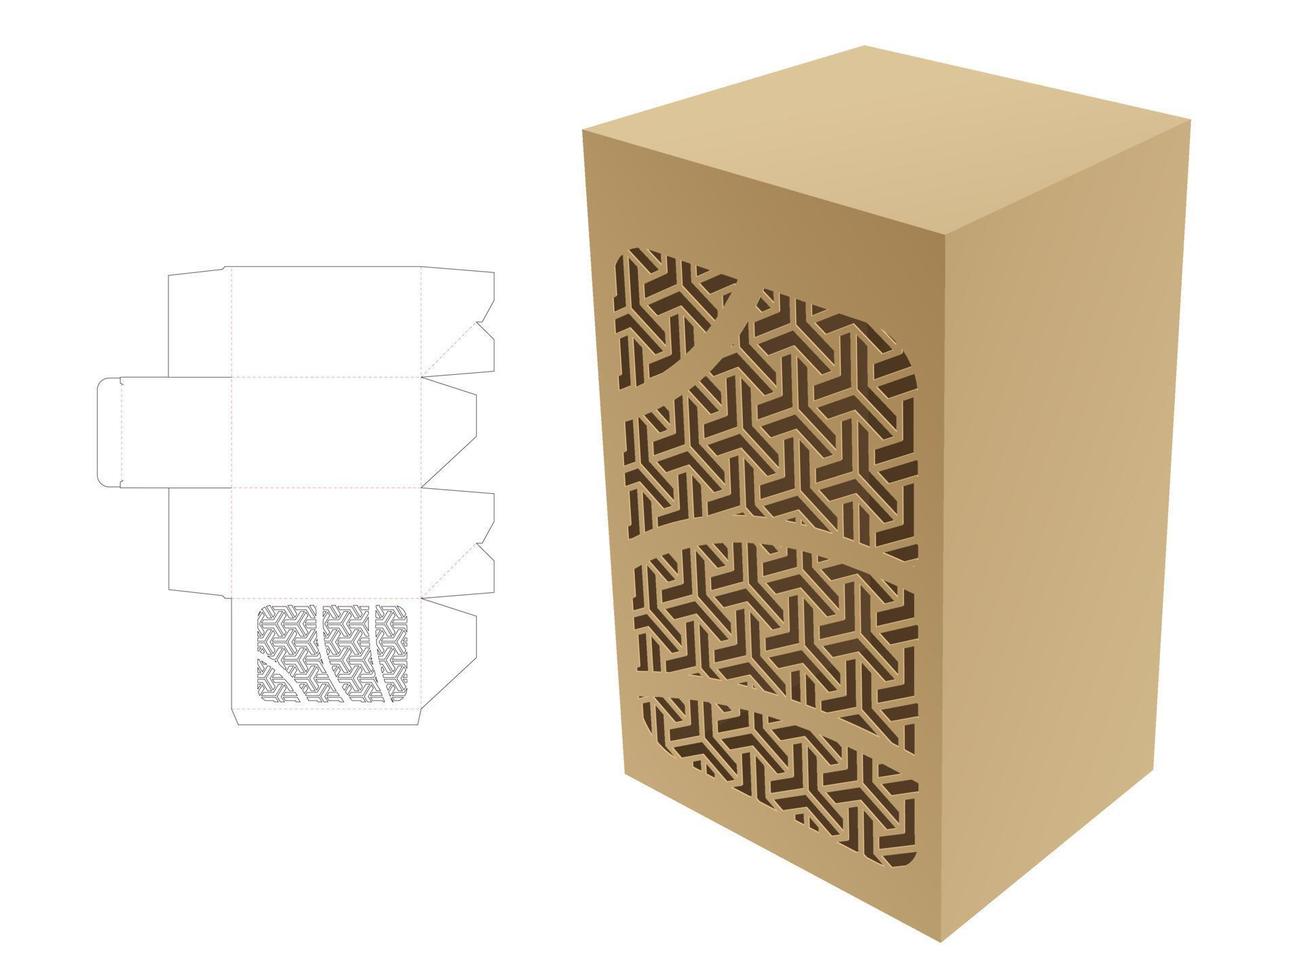 Verpackungsbox und schablonierte geometrische Stanzschablone und 3D-Modell vektor